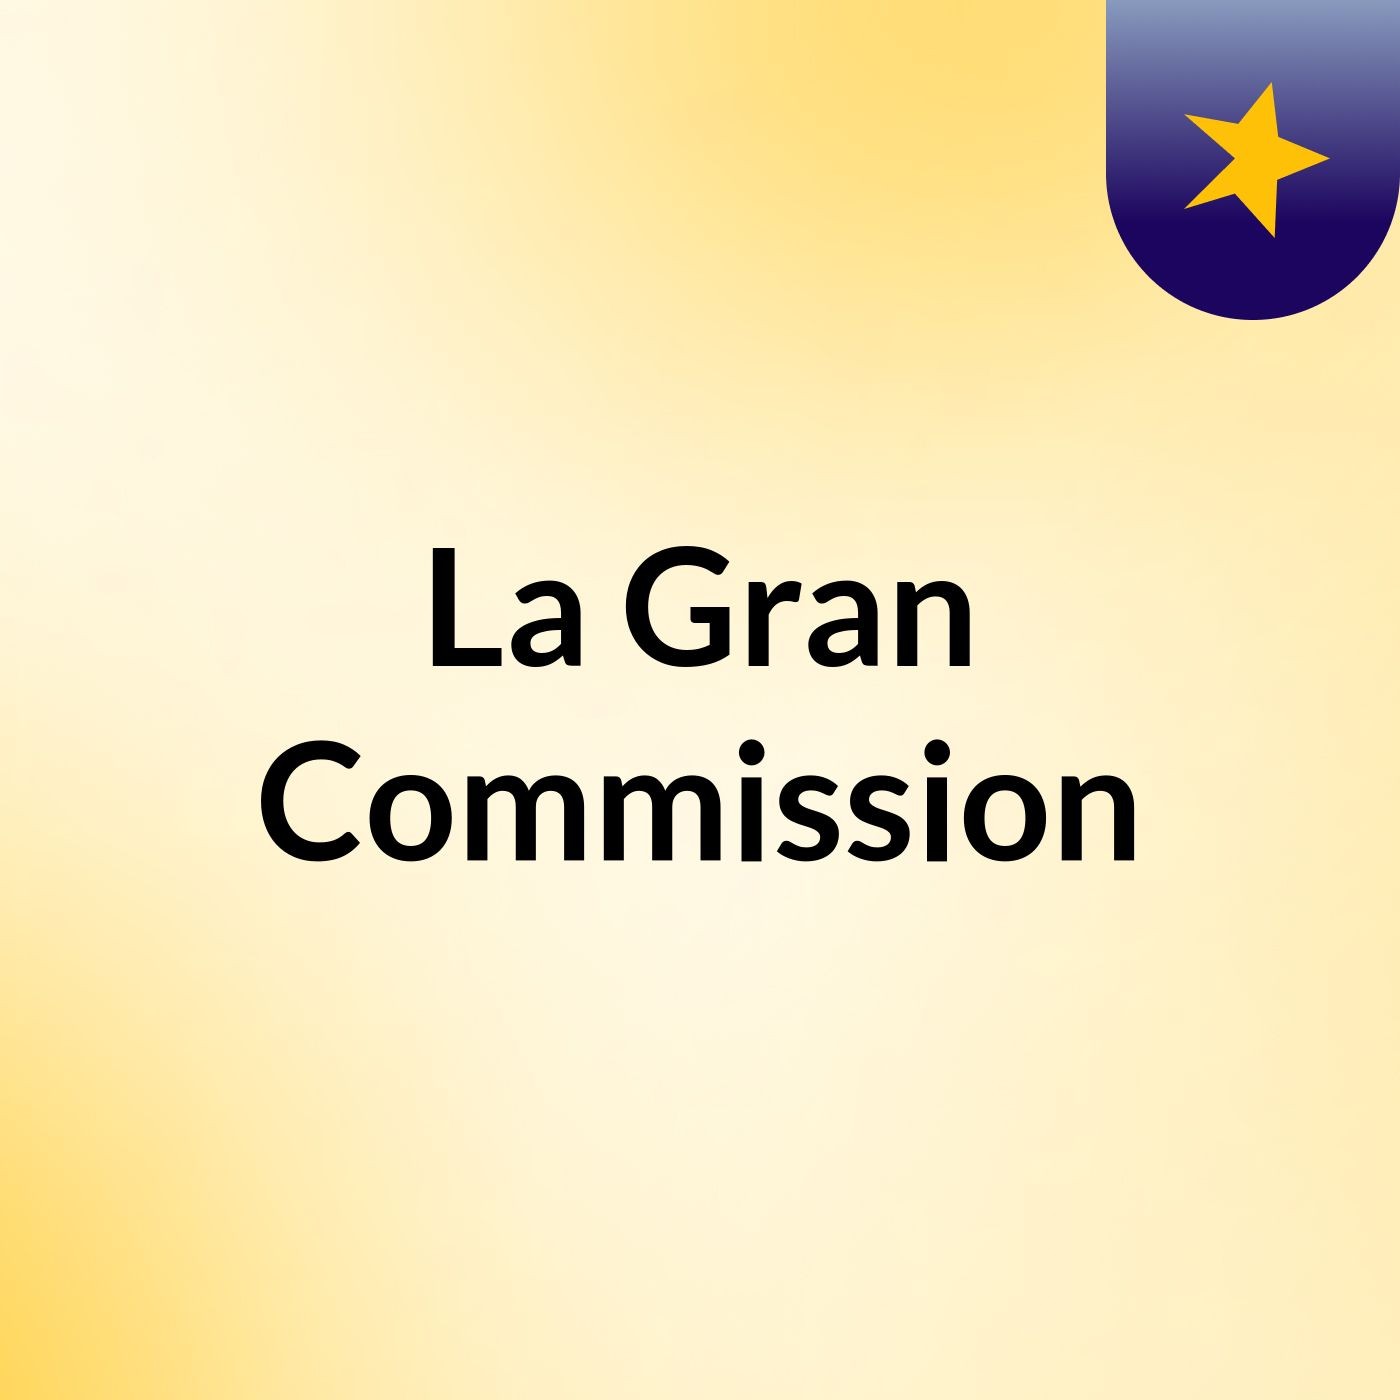 La Gran Commission